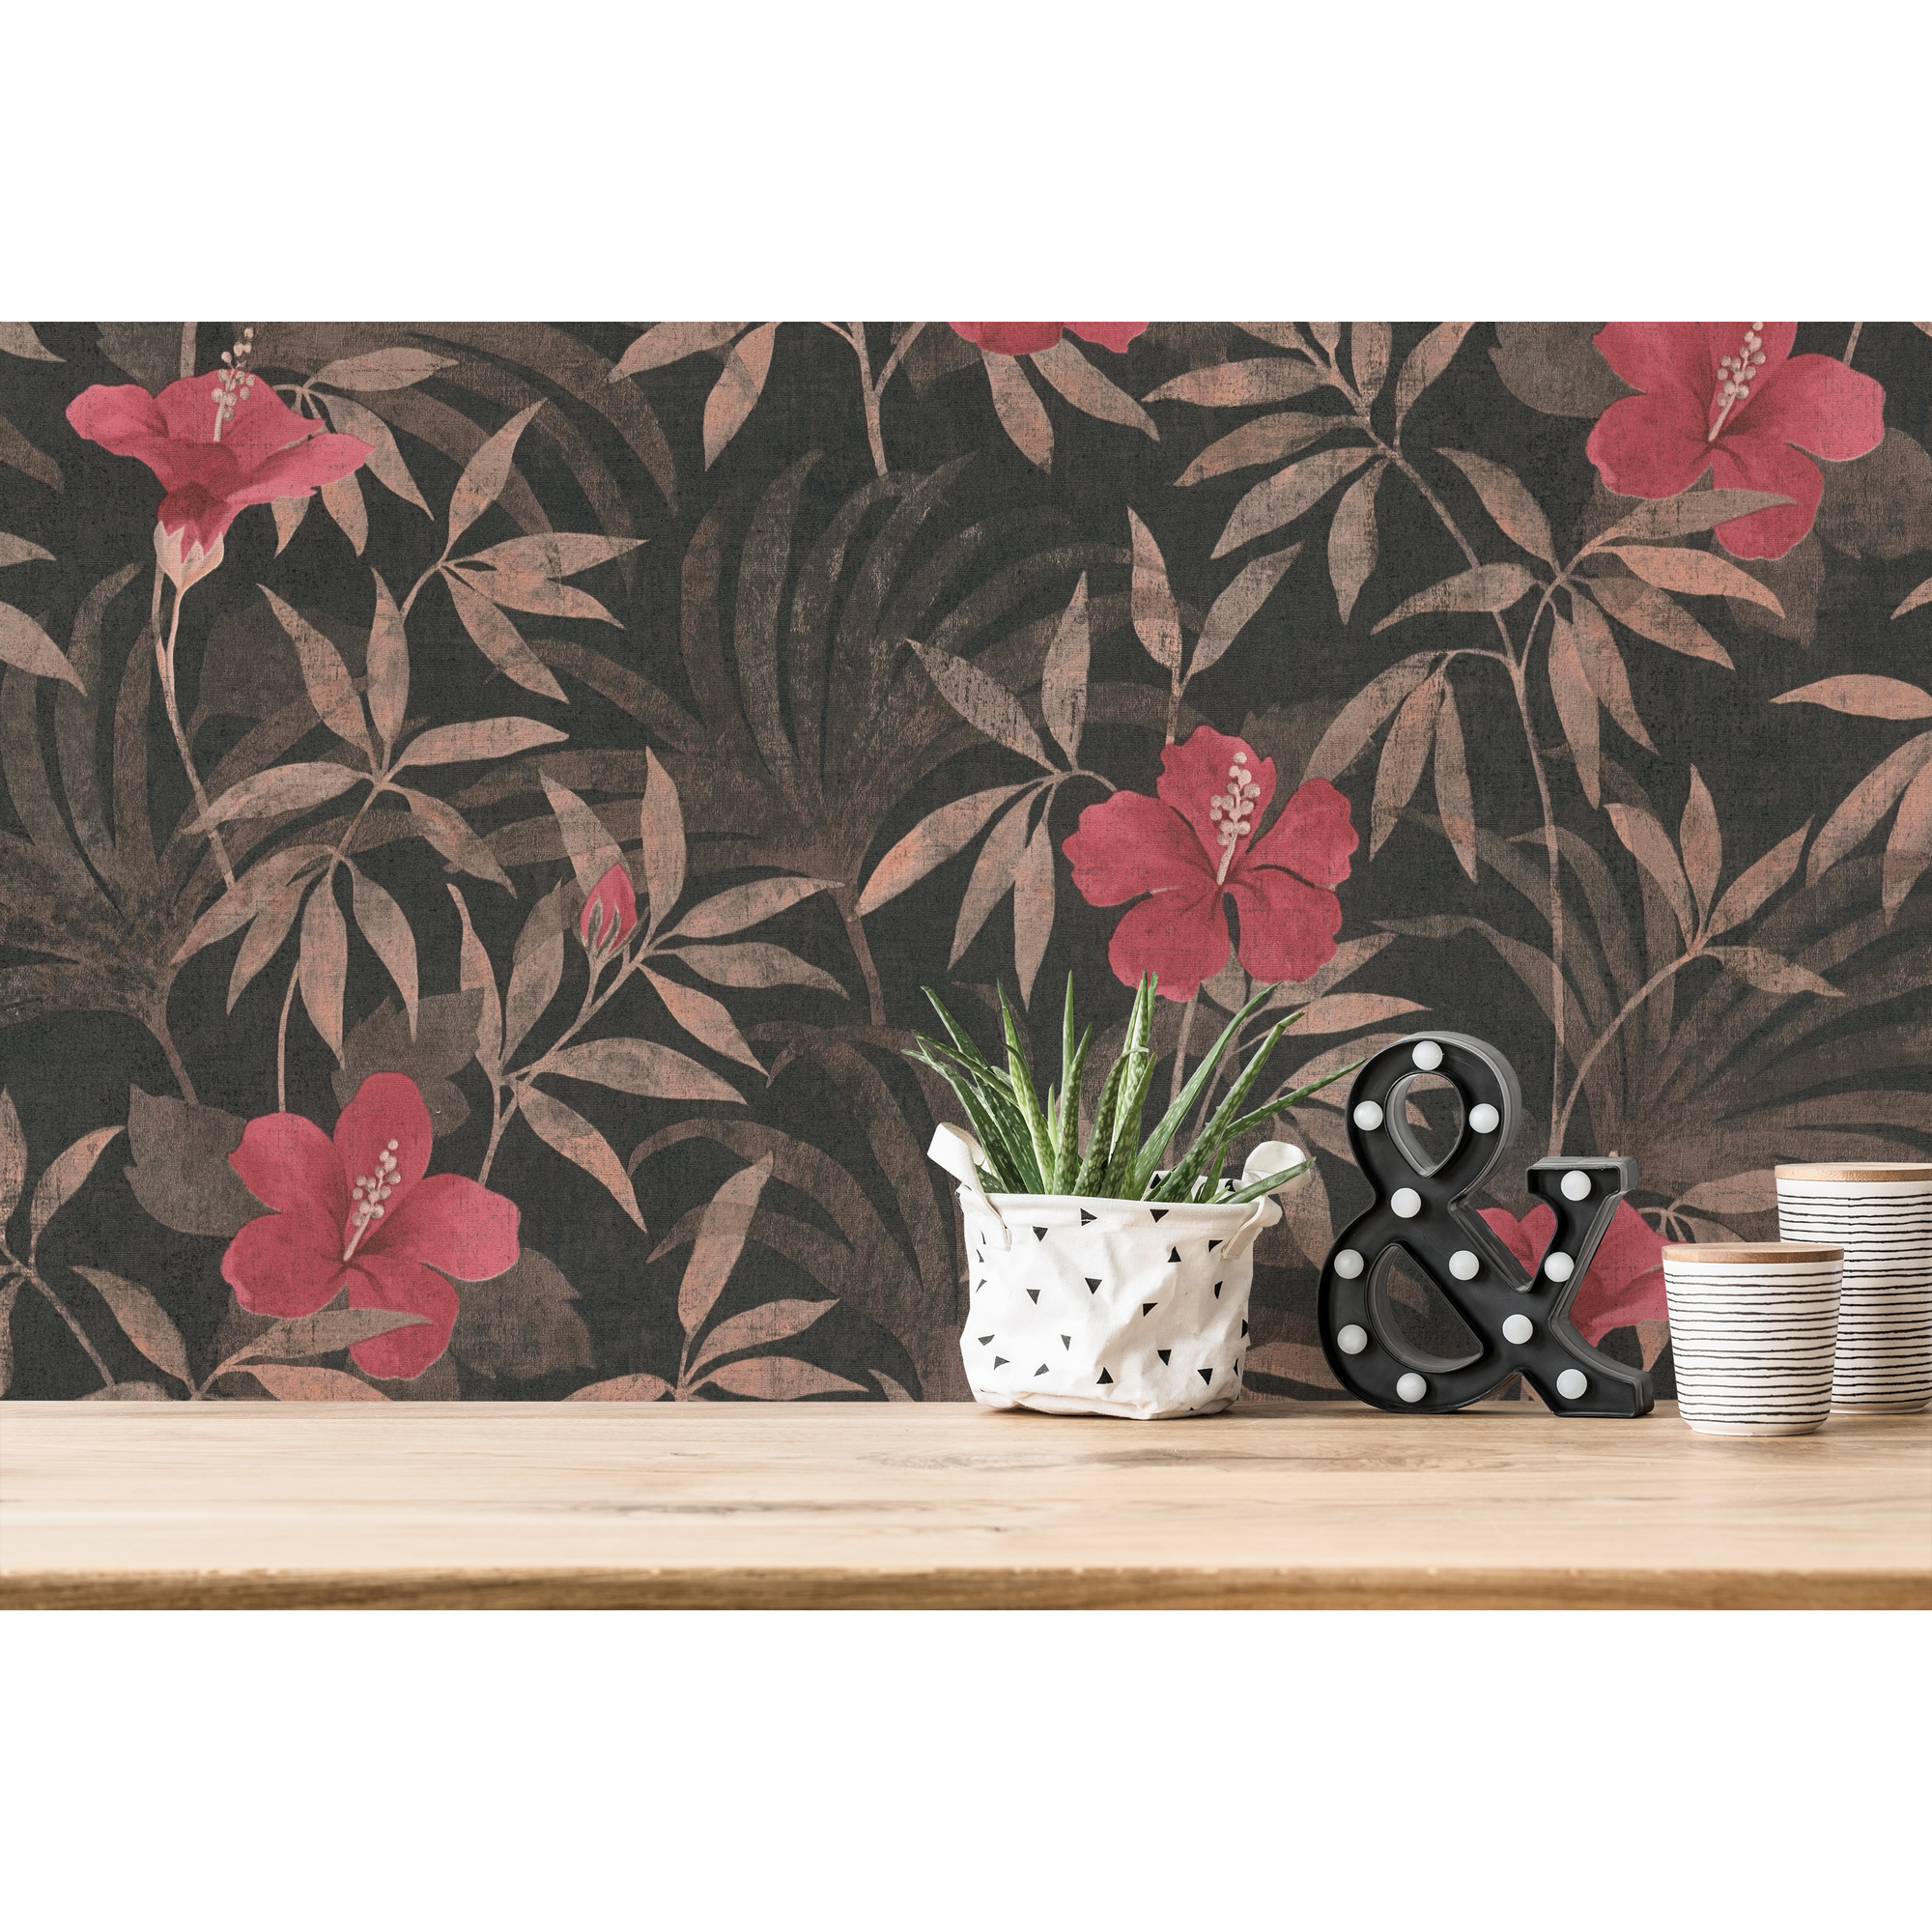 Vliestapete 'Cuba' Blätter, Blüten braun/rot 10,05 x 0,53 m + product picture